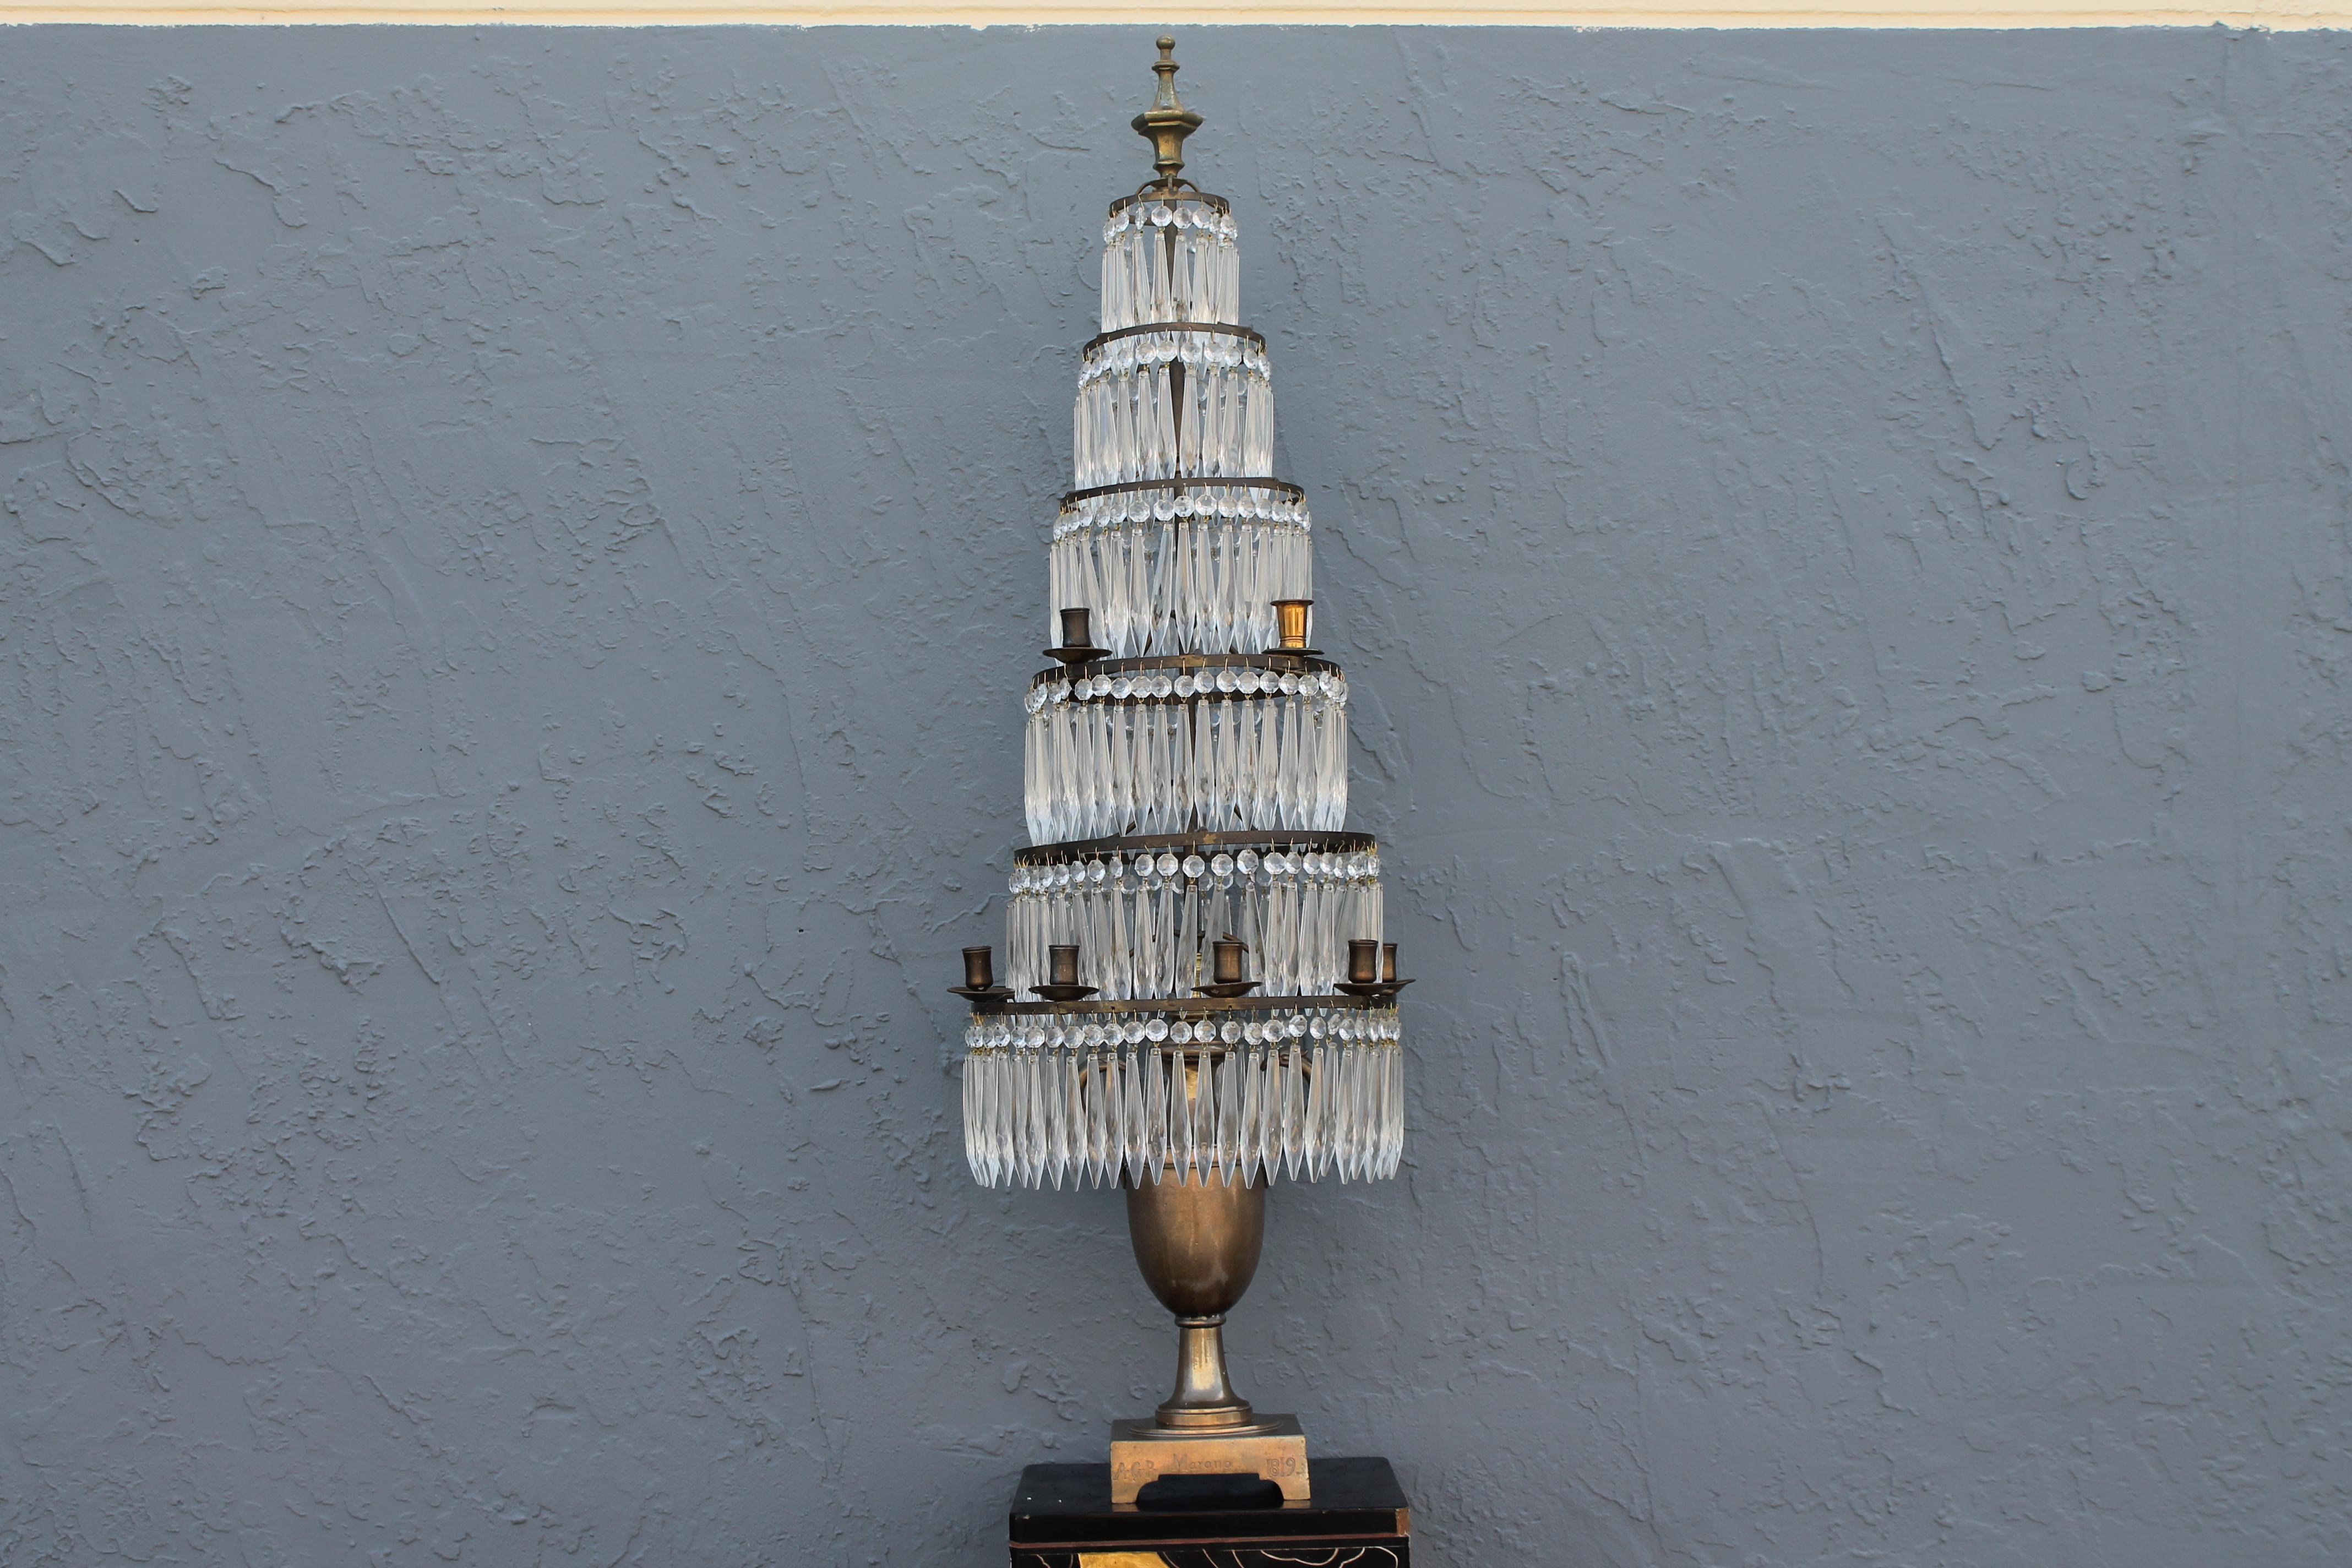 c1819 Grand lampadaire néoclassique à 6 étages en cristal taillé et bronze. Cette pièce se présente sous la forme originale d'un gobelet à bougie. Détail de l'aigle et de l'urne. Un gobelet de bougie a été remplacé. L'urne est marquée A.G.P. 1819